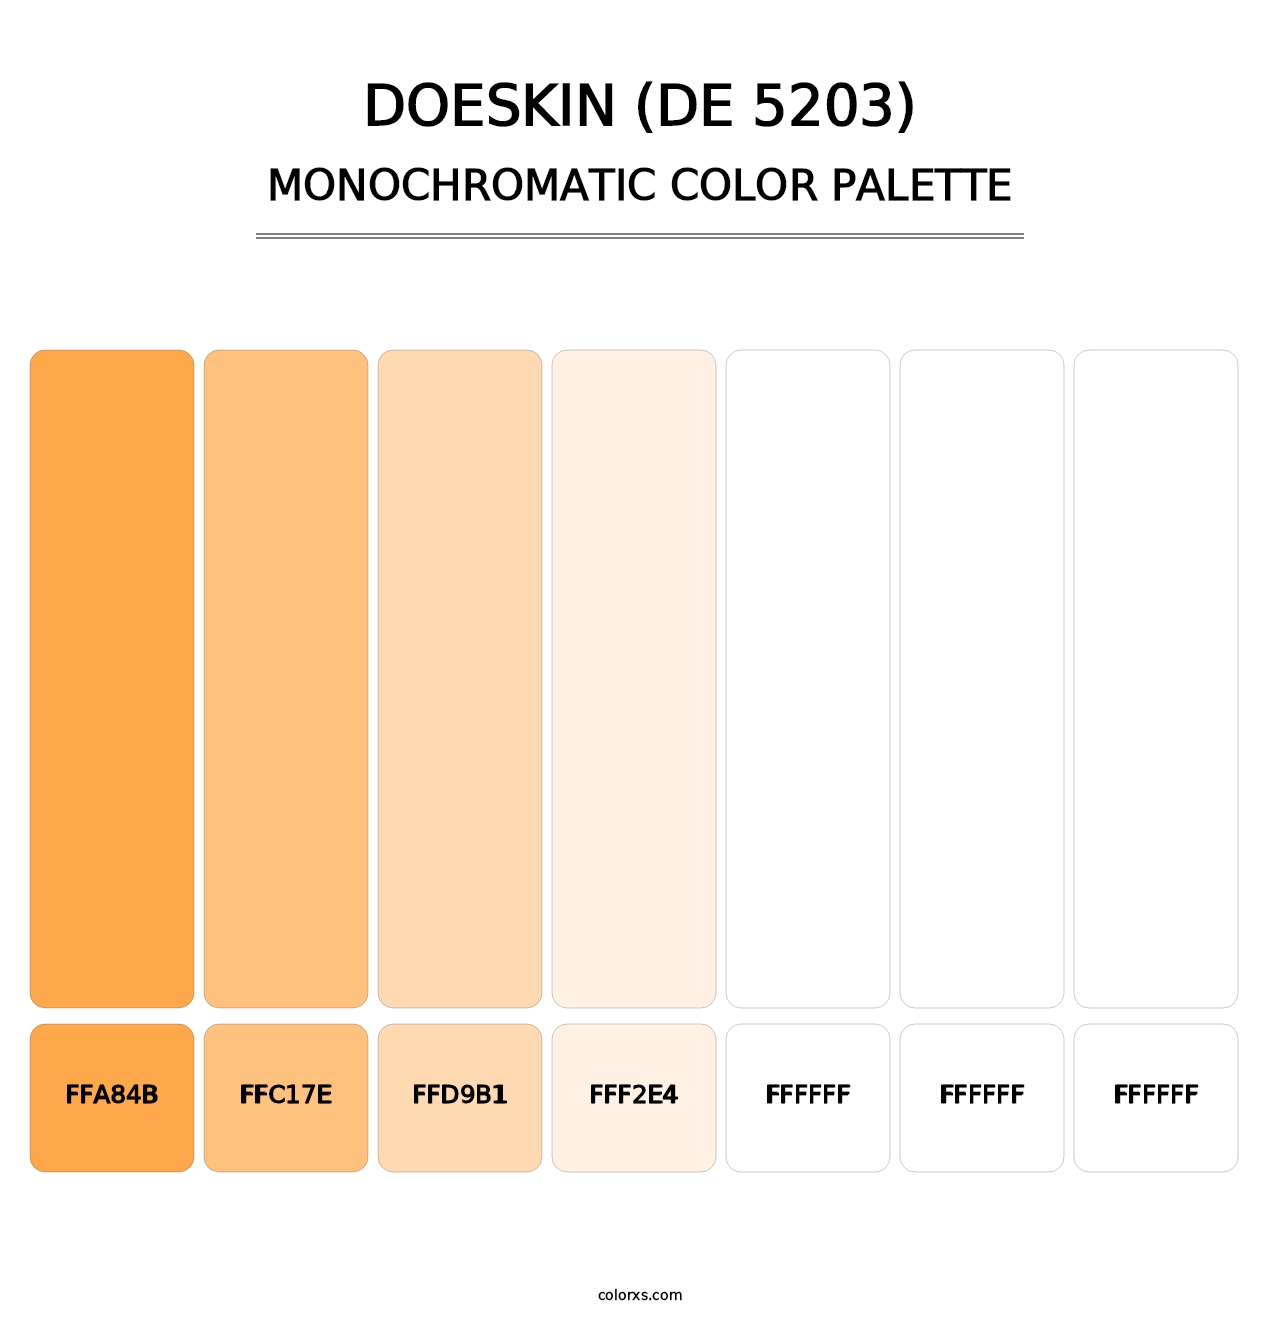 Doeskin (DE 5203) - Monochromatic Color Palette